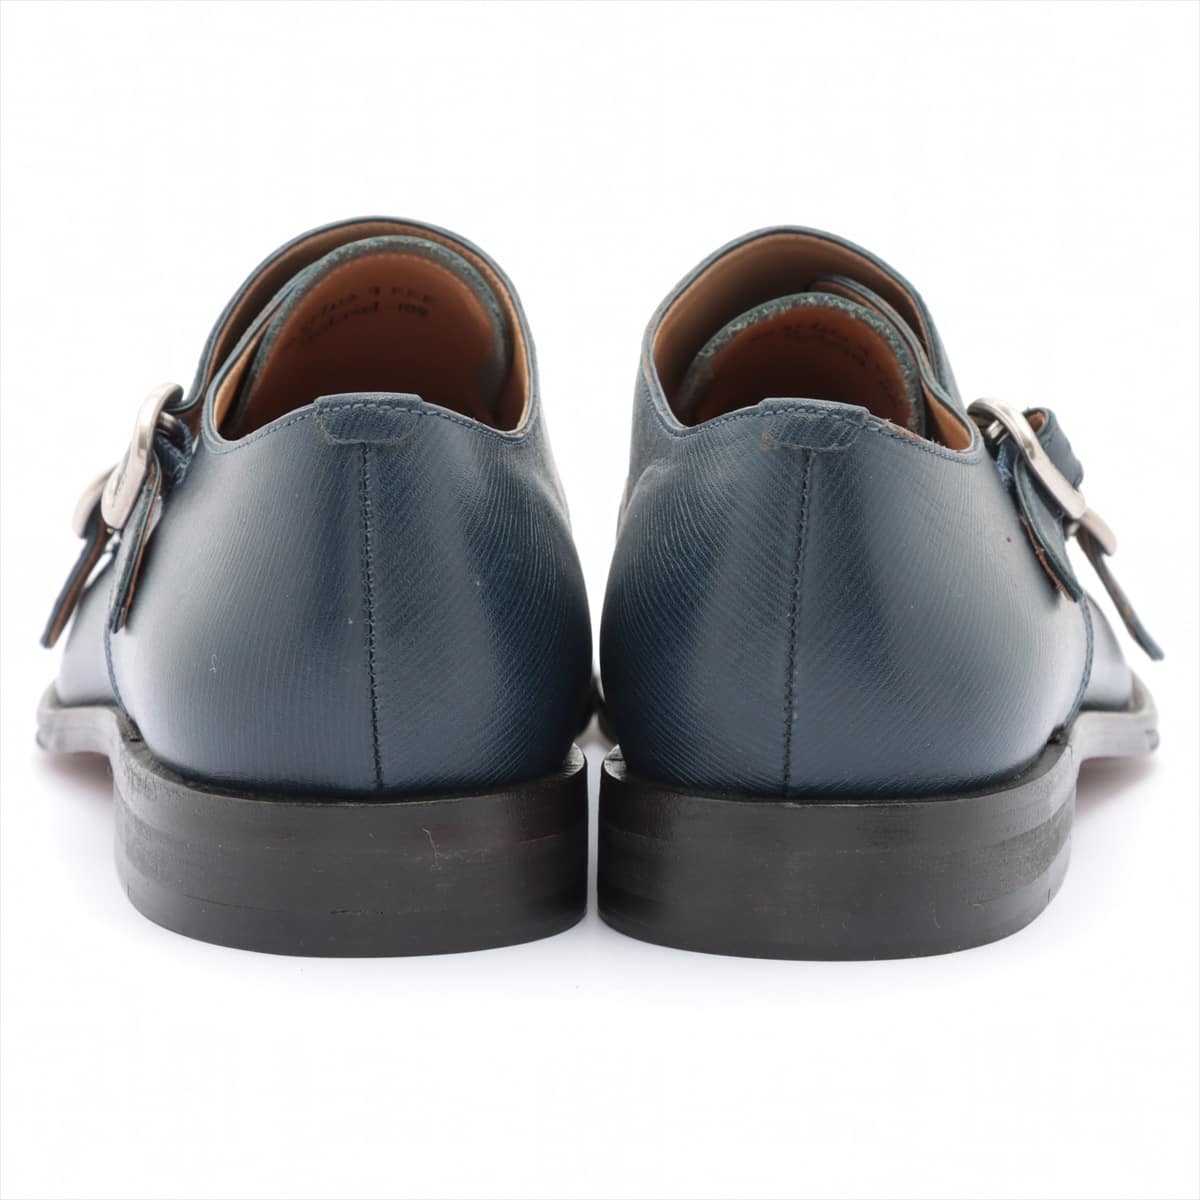 Barry Leather Dress shoes 9E Men's Navy blue Double monk strap Gobriel-108